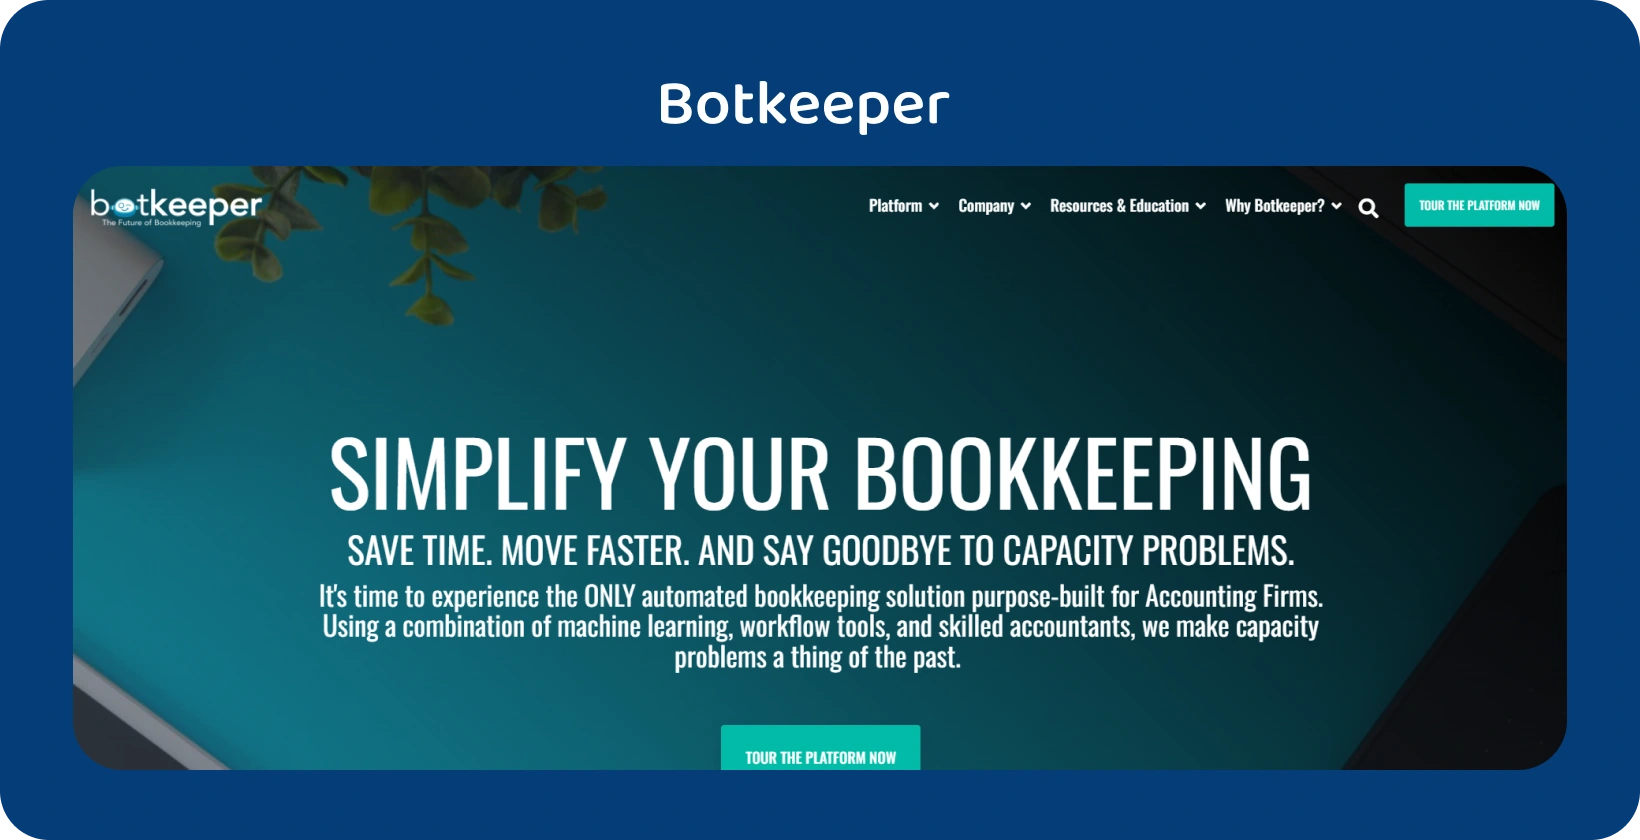 Botkeeperin kotisivuilla korostetaan kirjanpitäjien kirjanpidon yksinkertaistamista automaatiotekniikan avulla.